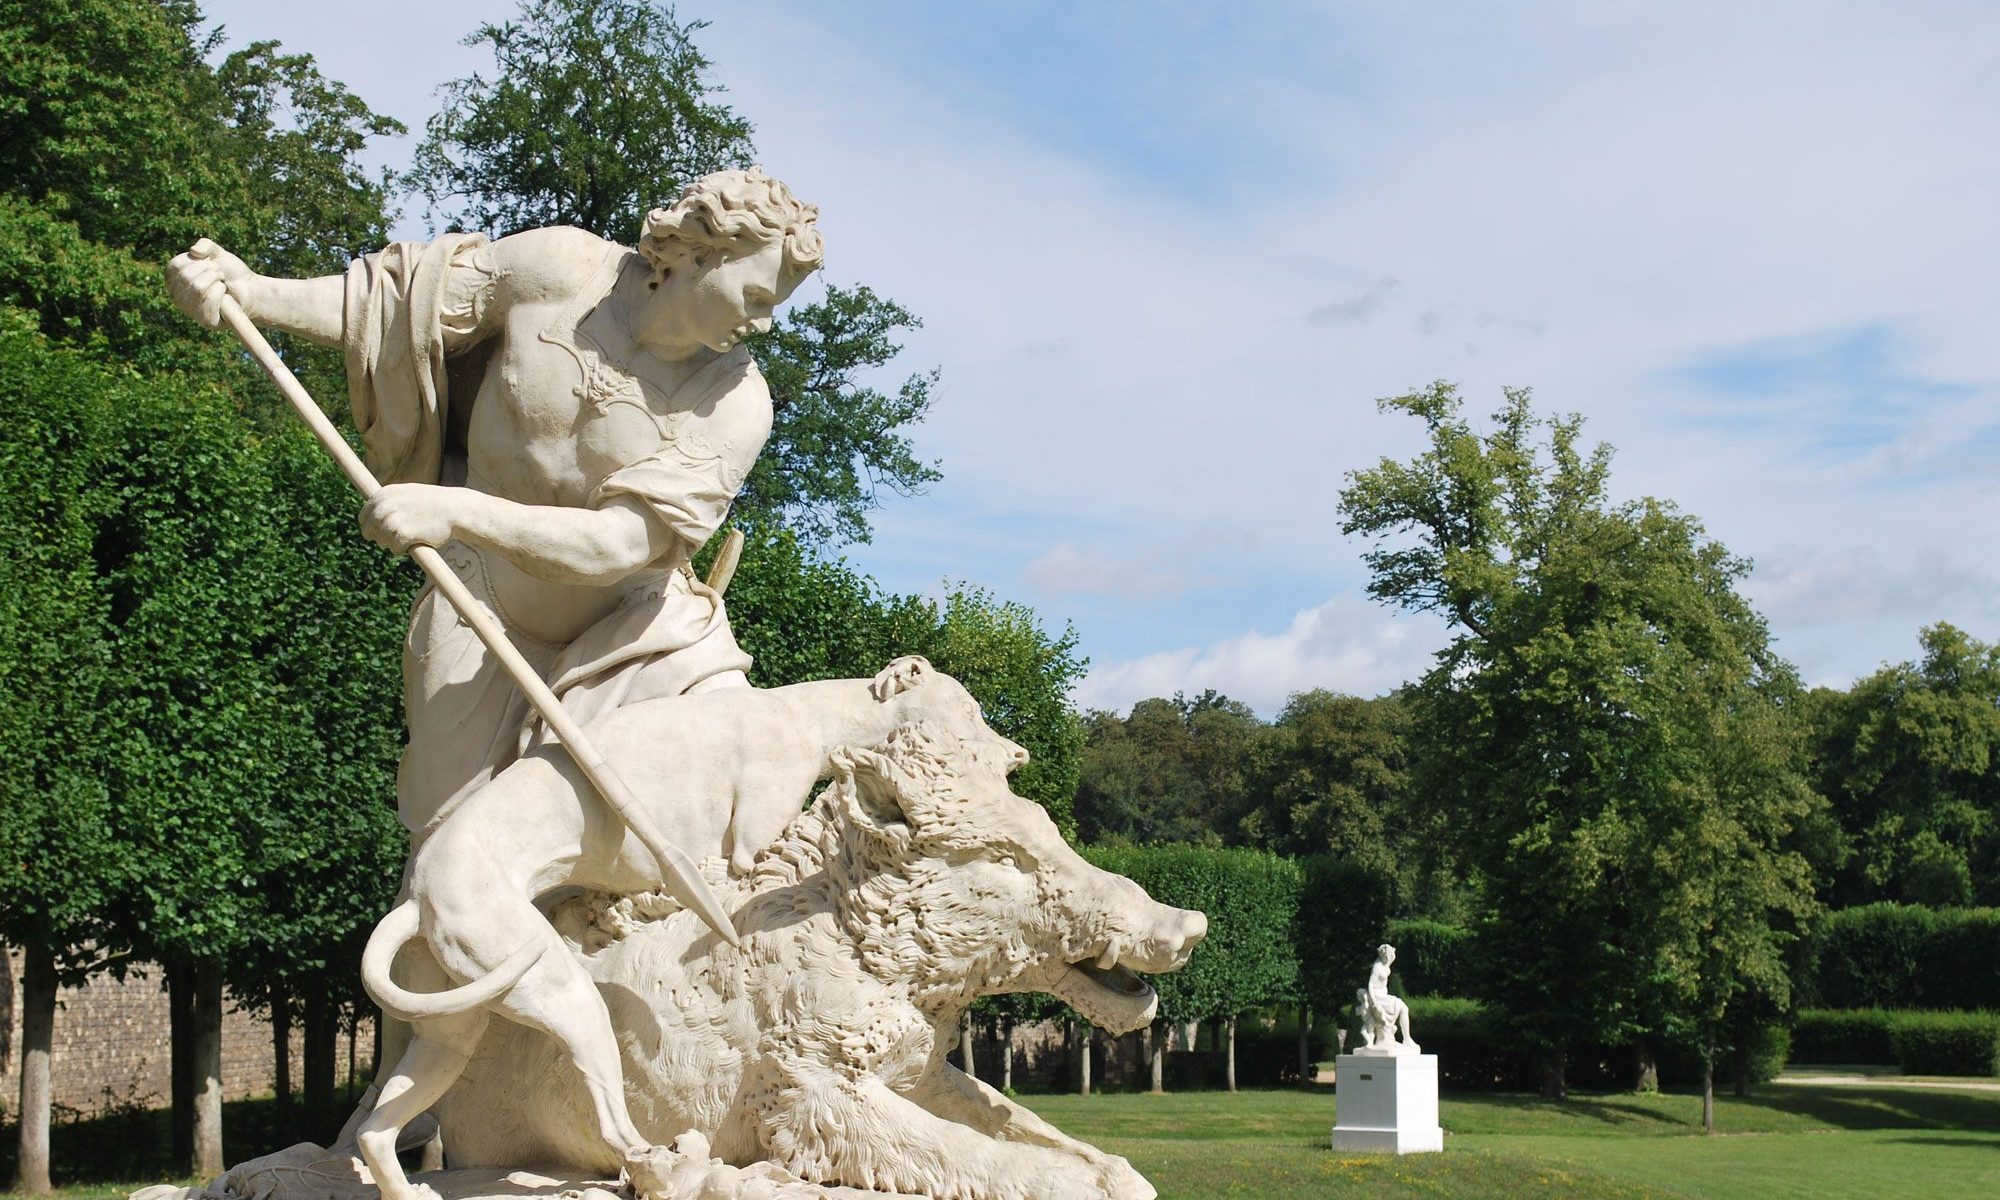 La statuaire du parc de Marly, Marly-le-Roi